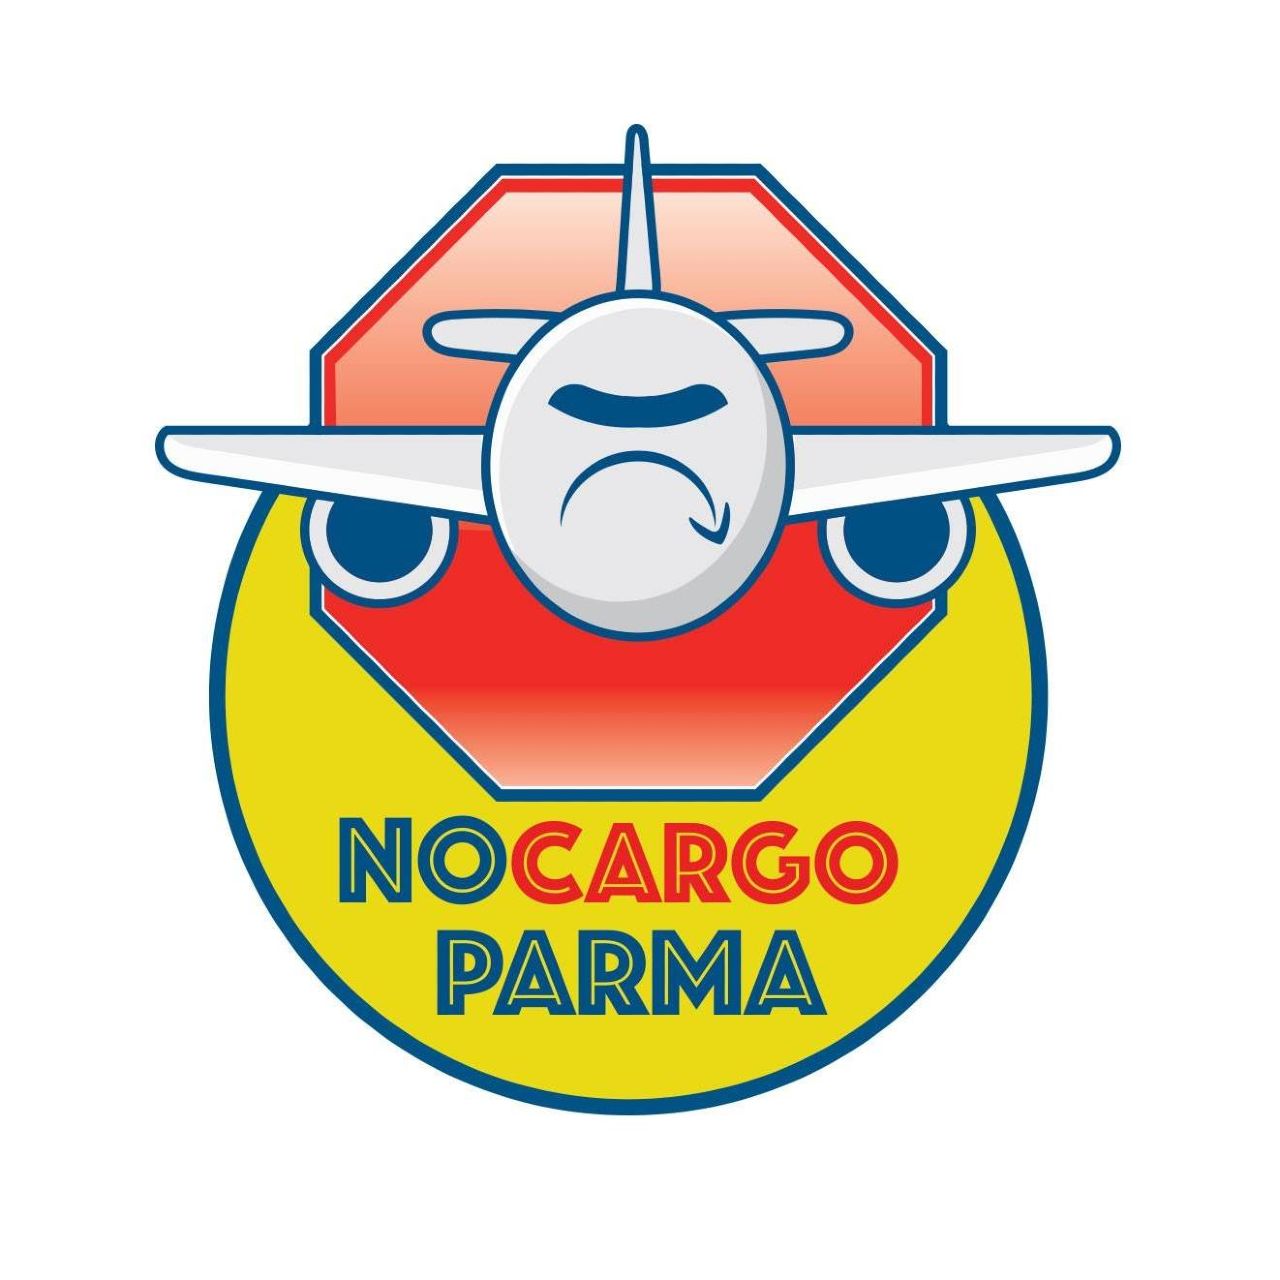 Aeroporto di Parma terminal Cargo? Una fiaba per dire no